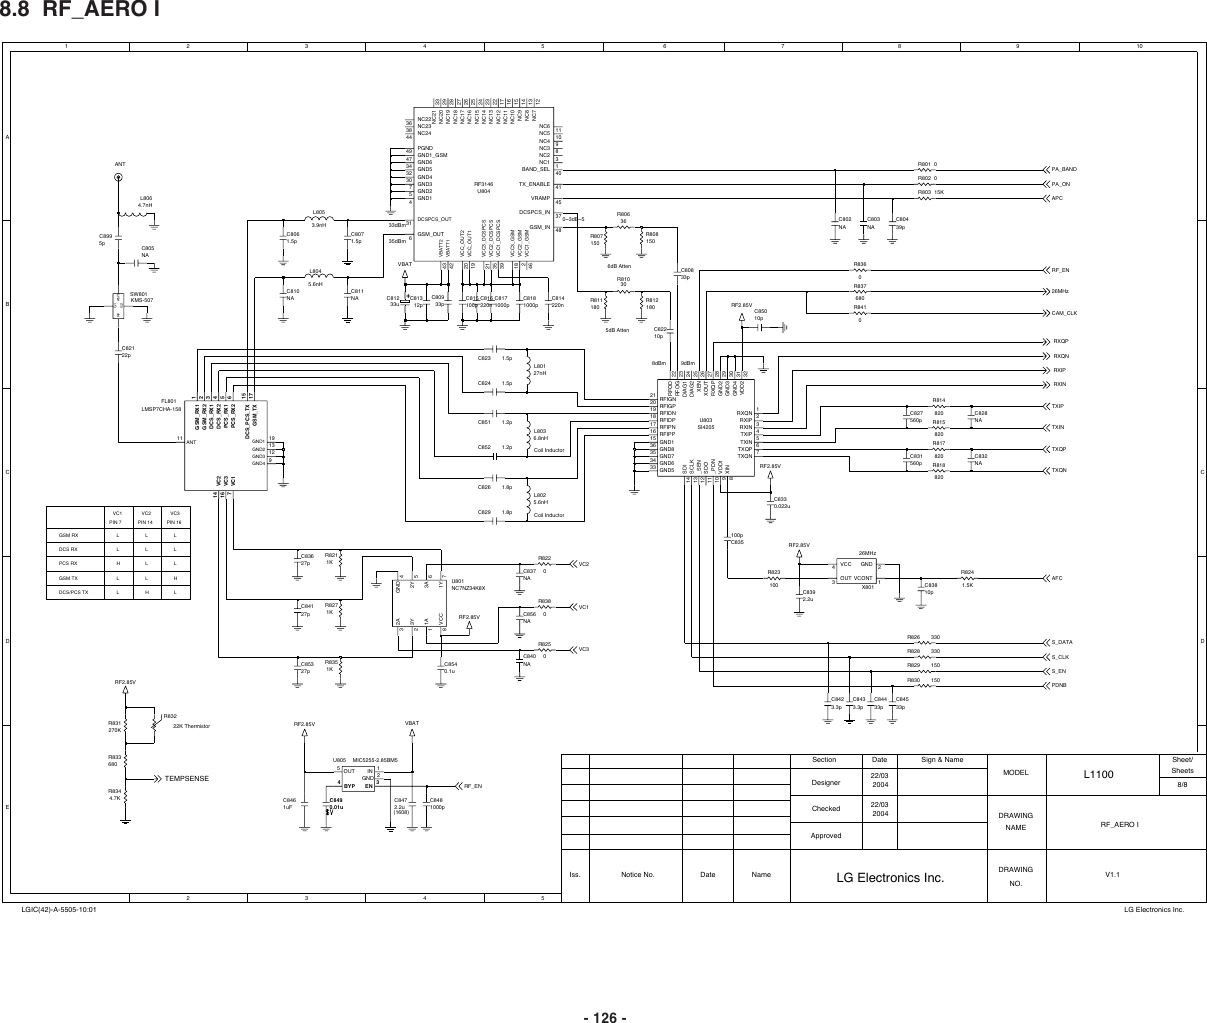 Page 8 of 11 - LG L1100 - Schematics. Www.s-manuals.com. Schematics